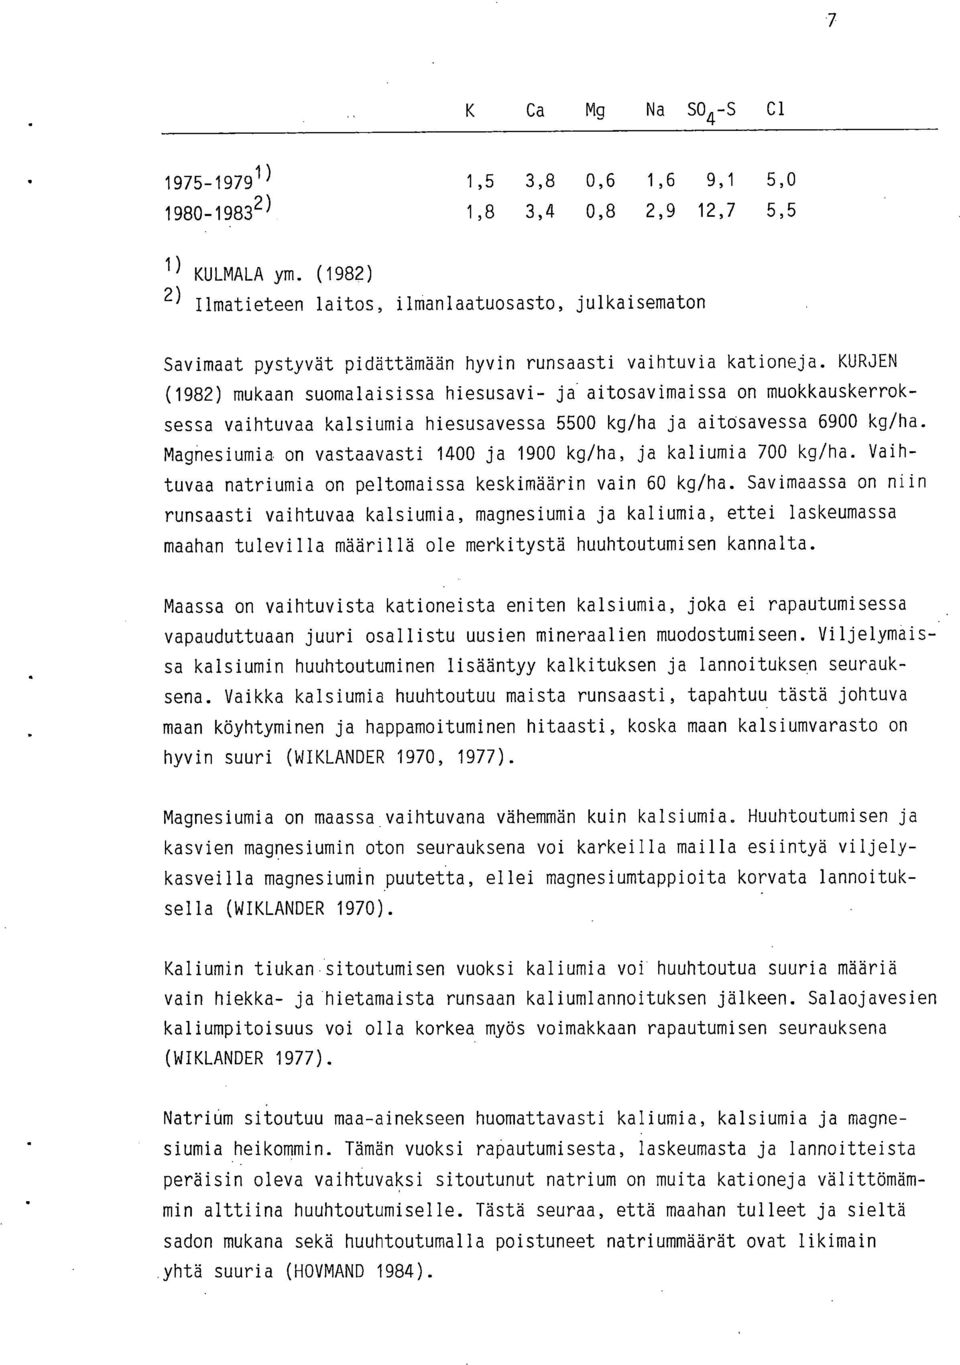 KURJEN (1982) mukaan suomalaisissa hiesusavi- ja aitosavimaissa on muokkauskerroksessa vaihtuvaa kalsiumia hiesusavessa 5500 kg/ha ja aitcisavessa 6900 kg/ha.